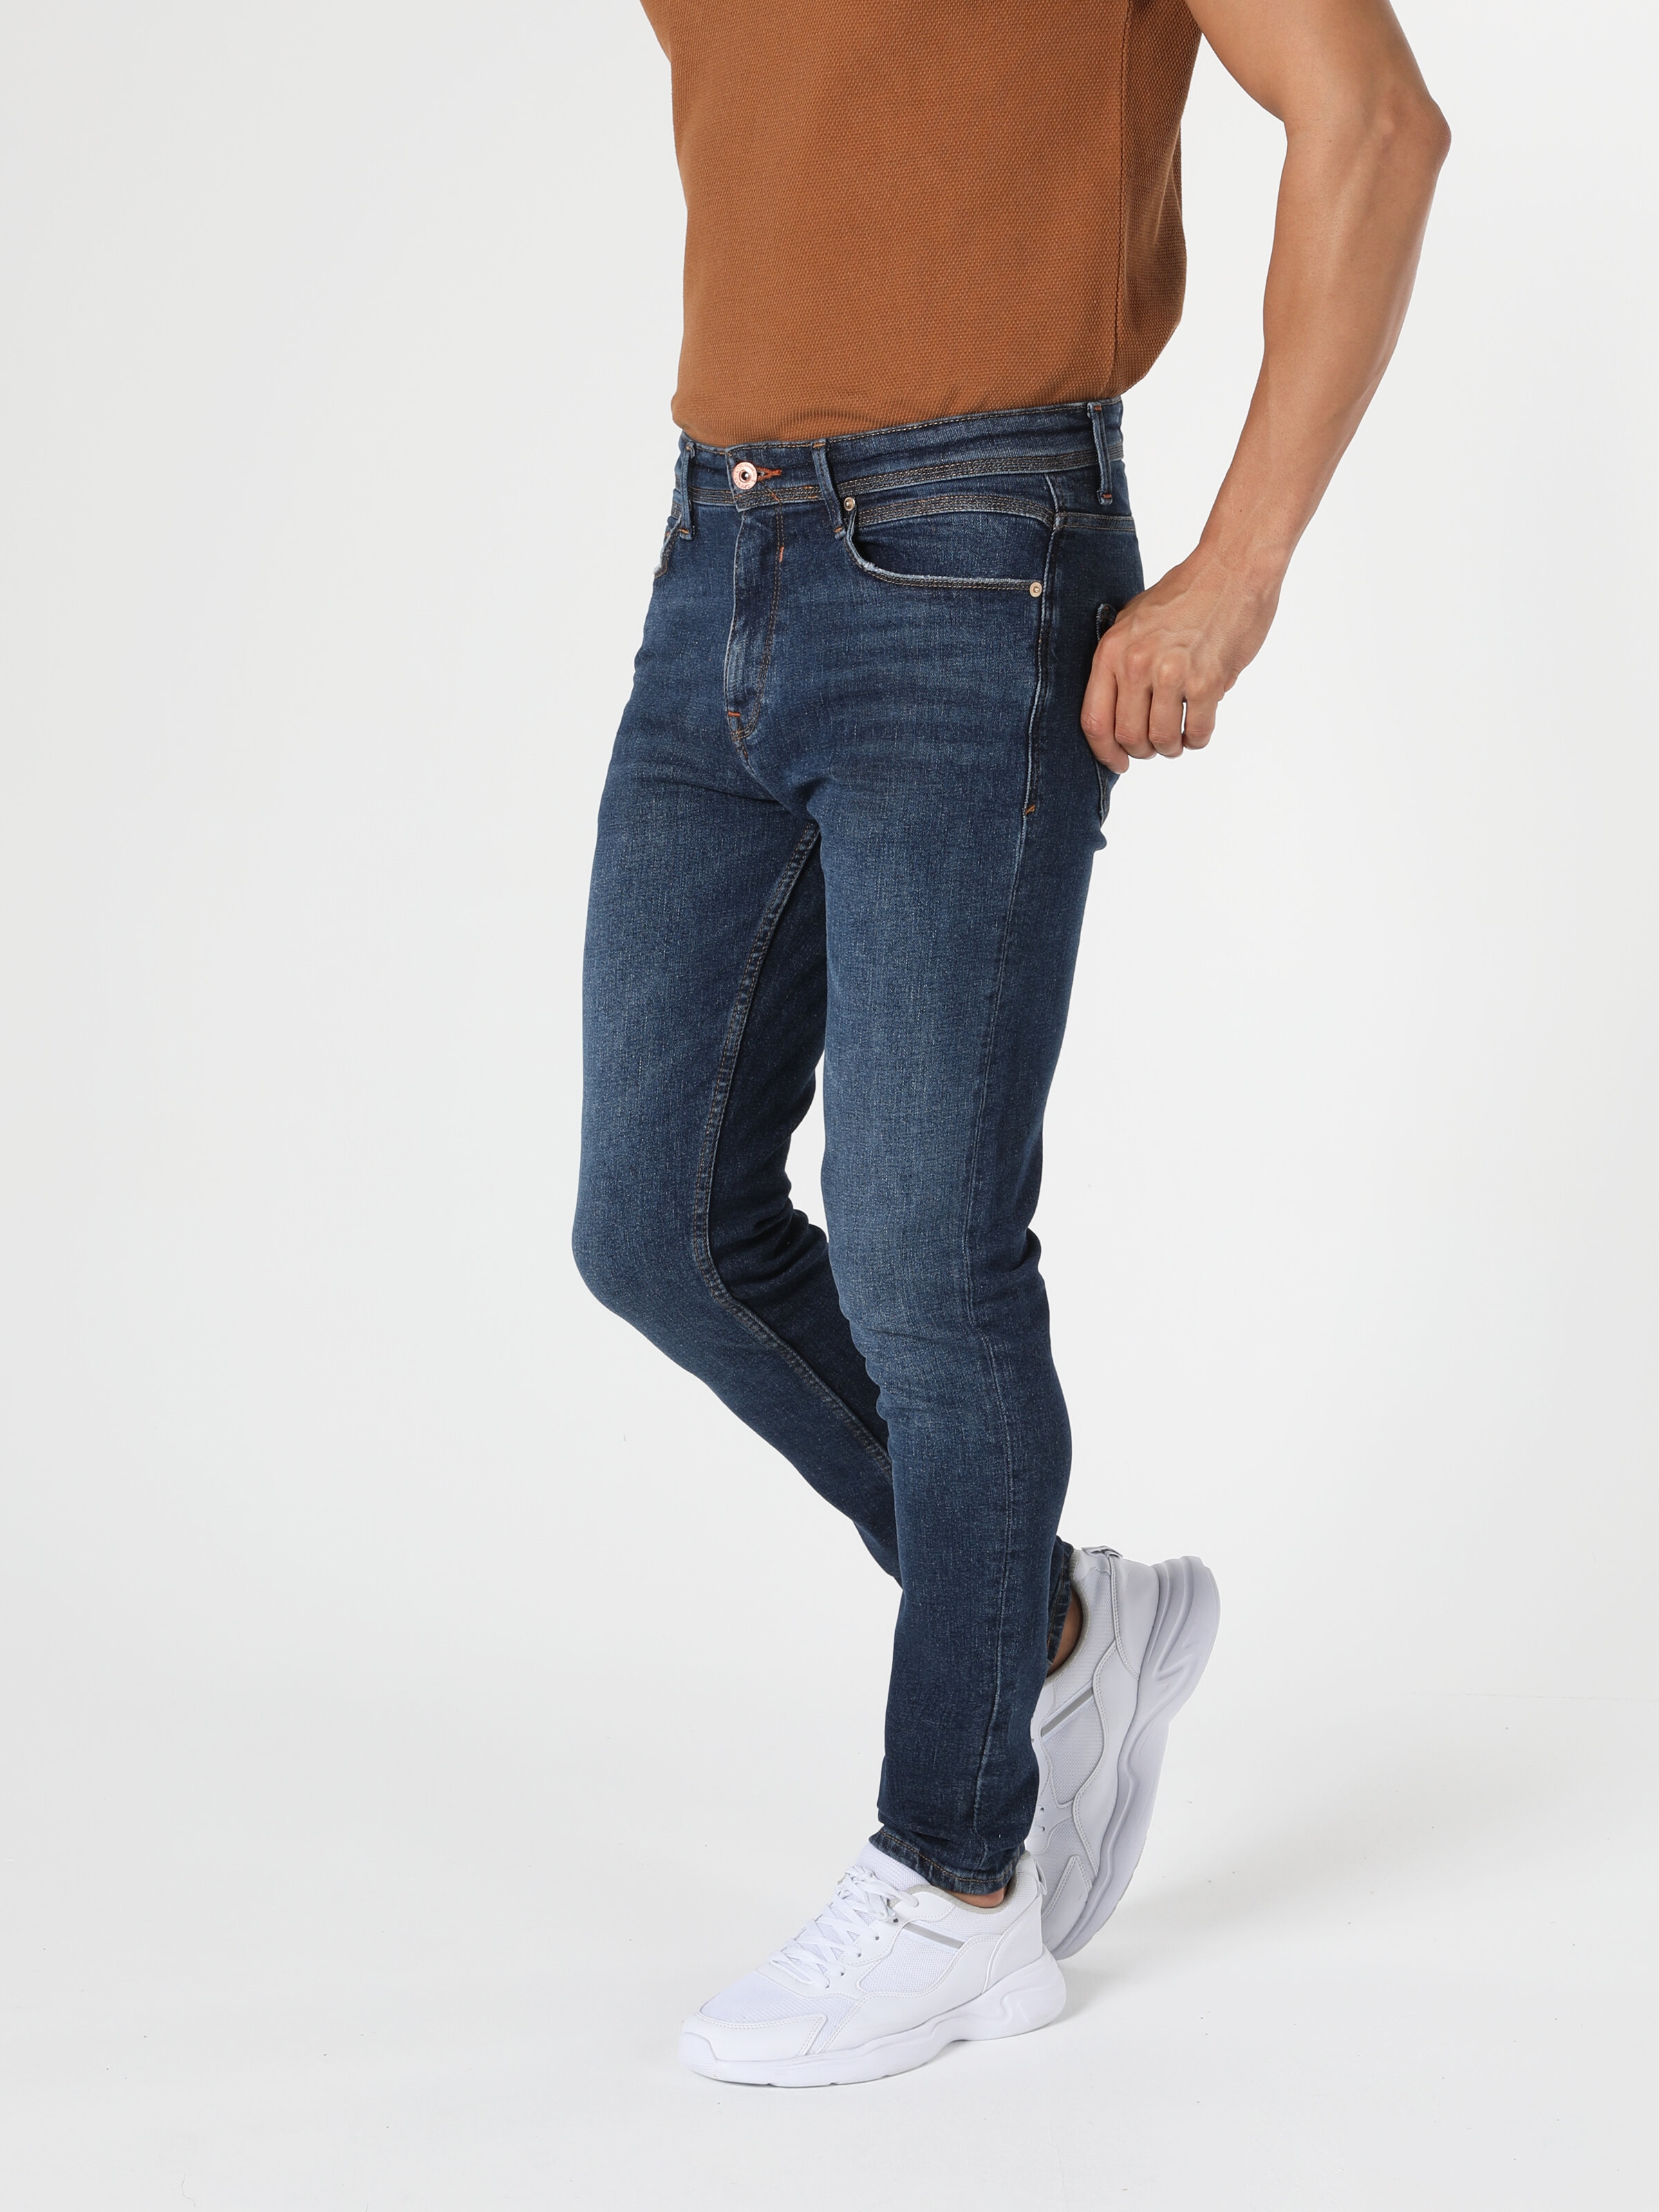 Academie recept Selectiekader Pantalon Jean Hommes - Jeans tout | Colin's